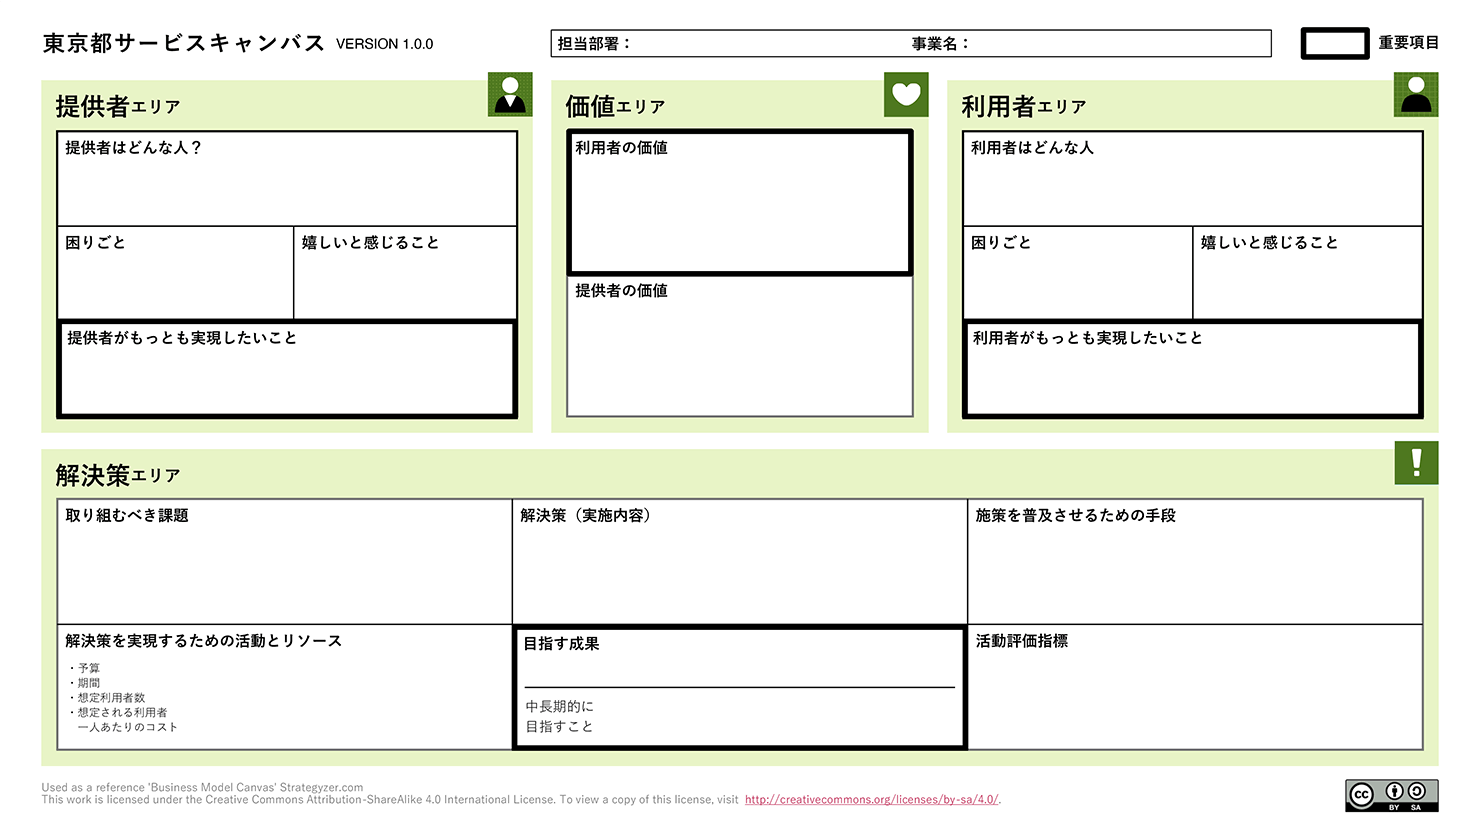 「東京都サービスキャンバス」の画像。「提供者エリア」「価値エリア」「利用者エリア」「解決策エリア」と1枚が4つの領域に分かれており、それぞれのエリアに必要な項目を記入できるシートになっている。